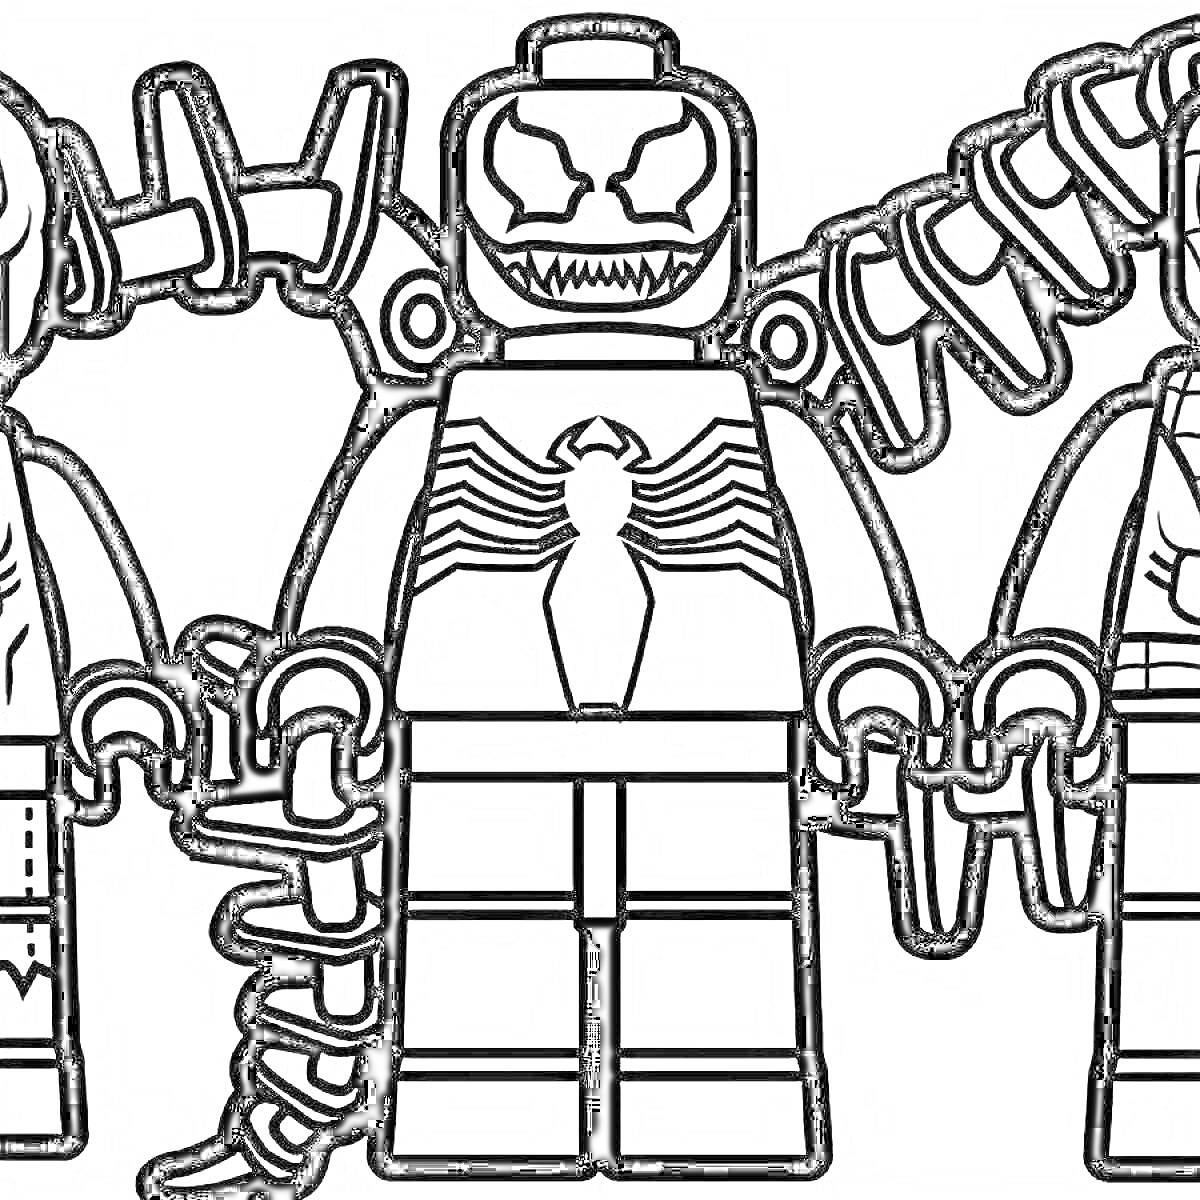 Трое персонажей лего, один из которых Веном, стоящие в ряд с деталями на фоне